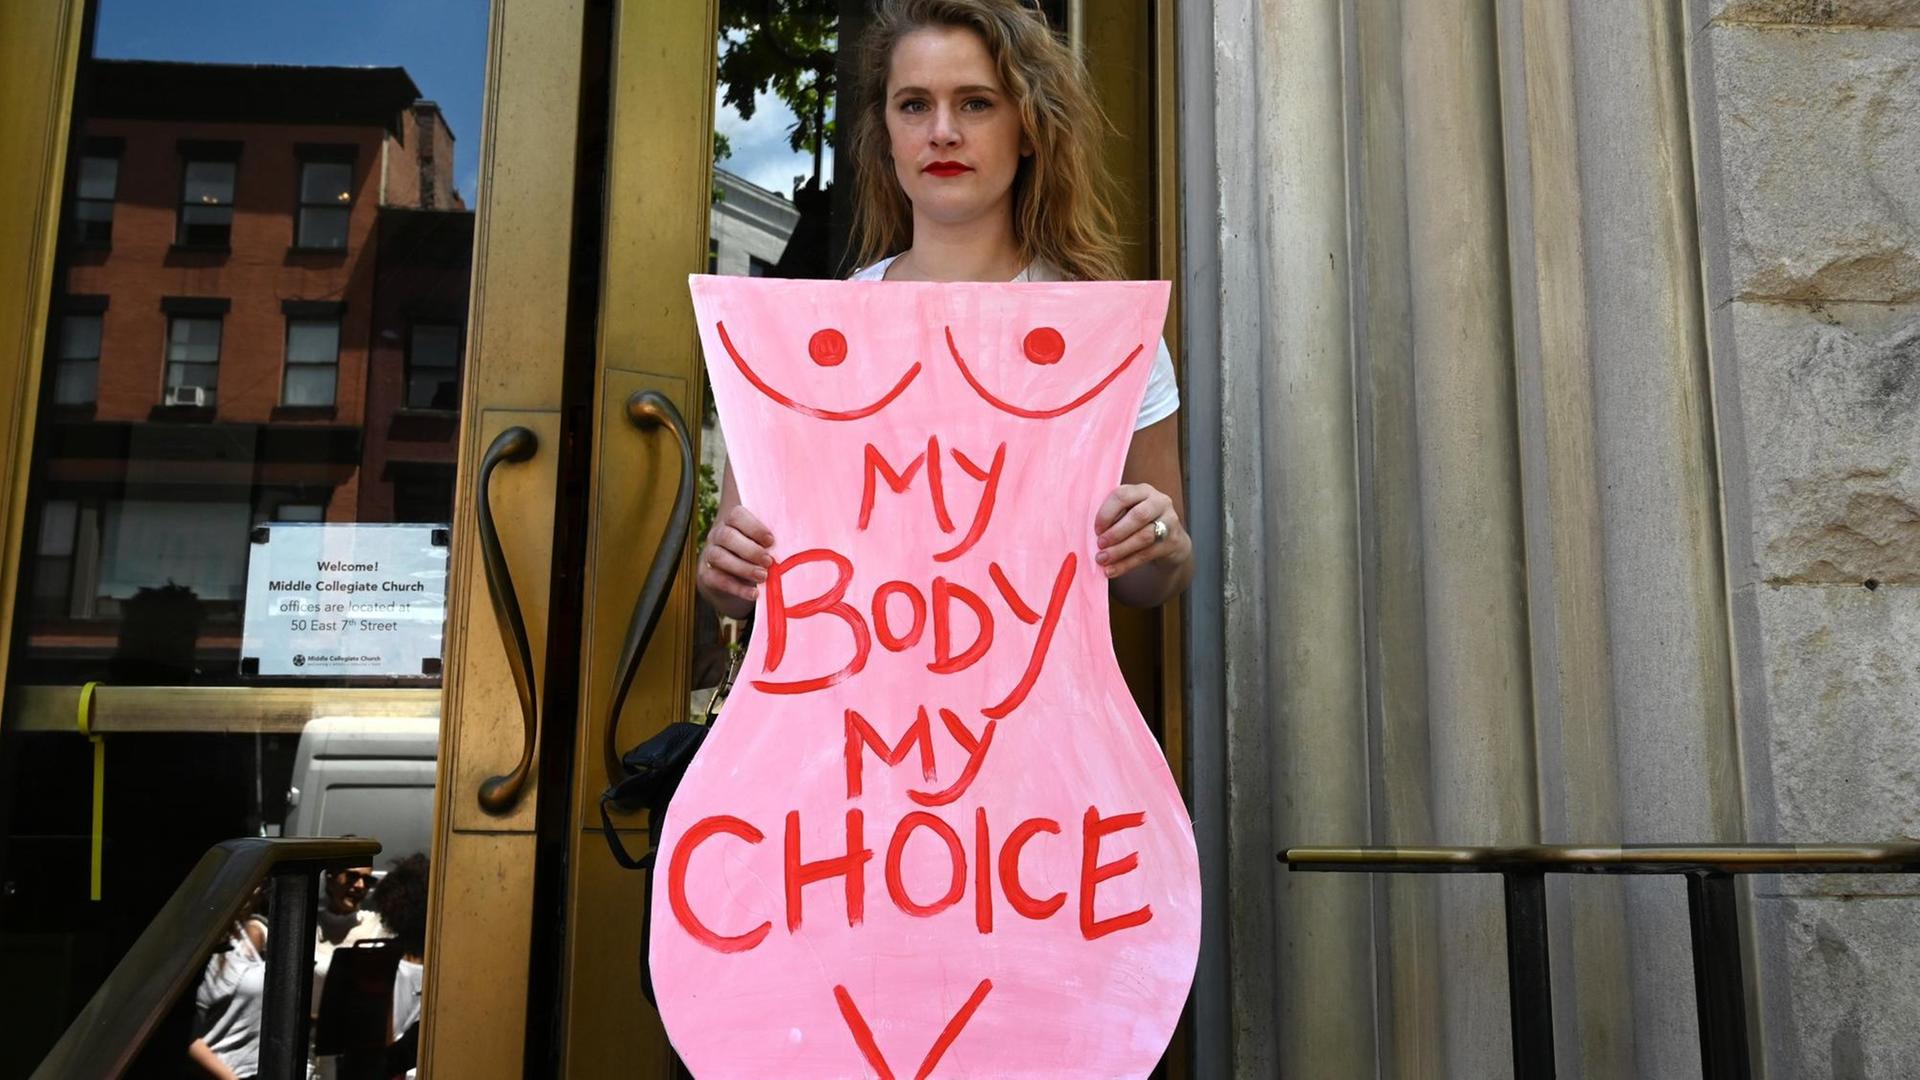 Eine Aktivistin hält bei einer Demonstration für legale Abtreibungen einen Karton in Form eines Frauenkörpers in deie Höhe, auf dem steht "Mein Körper, meine Entscheidung".